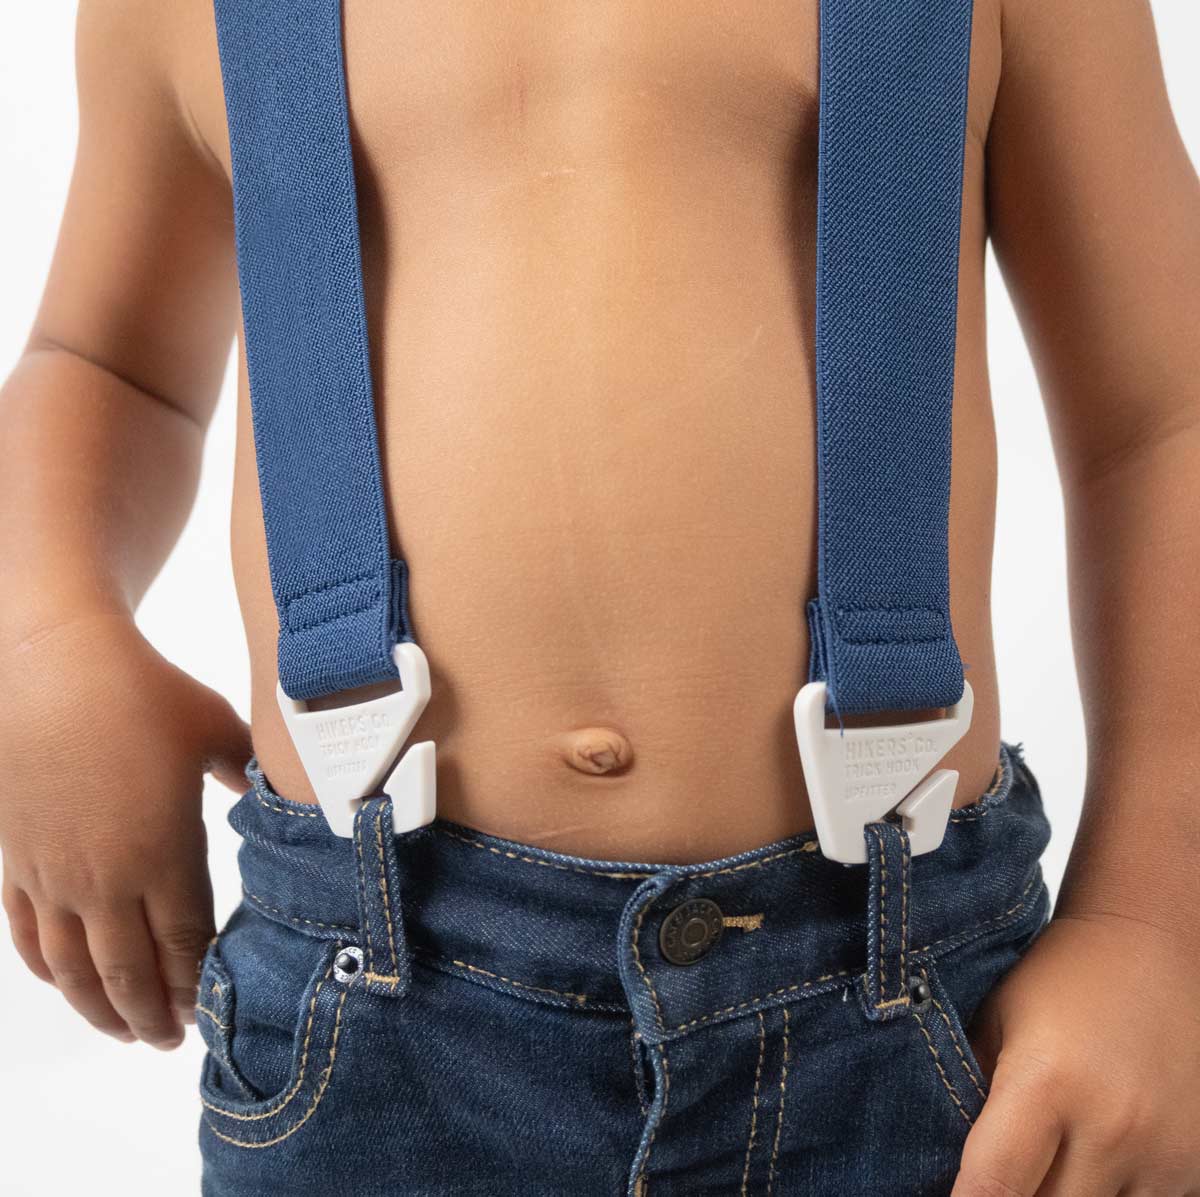 Upfitter® Youth Belt Loop Suspenders – HIKERS® Co.